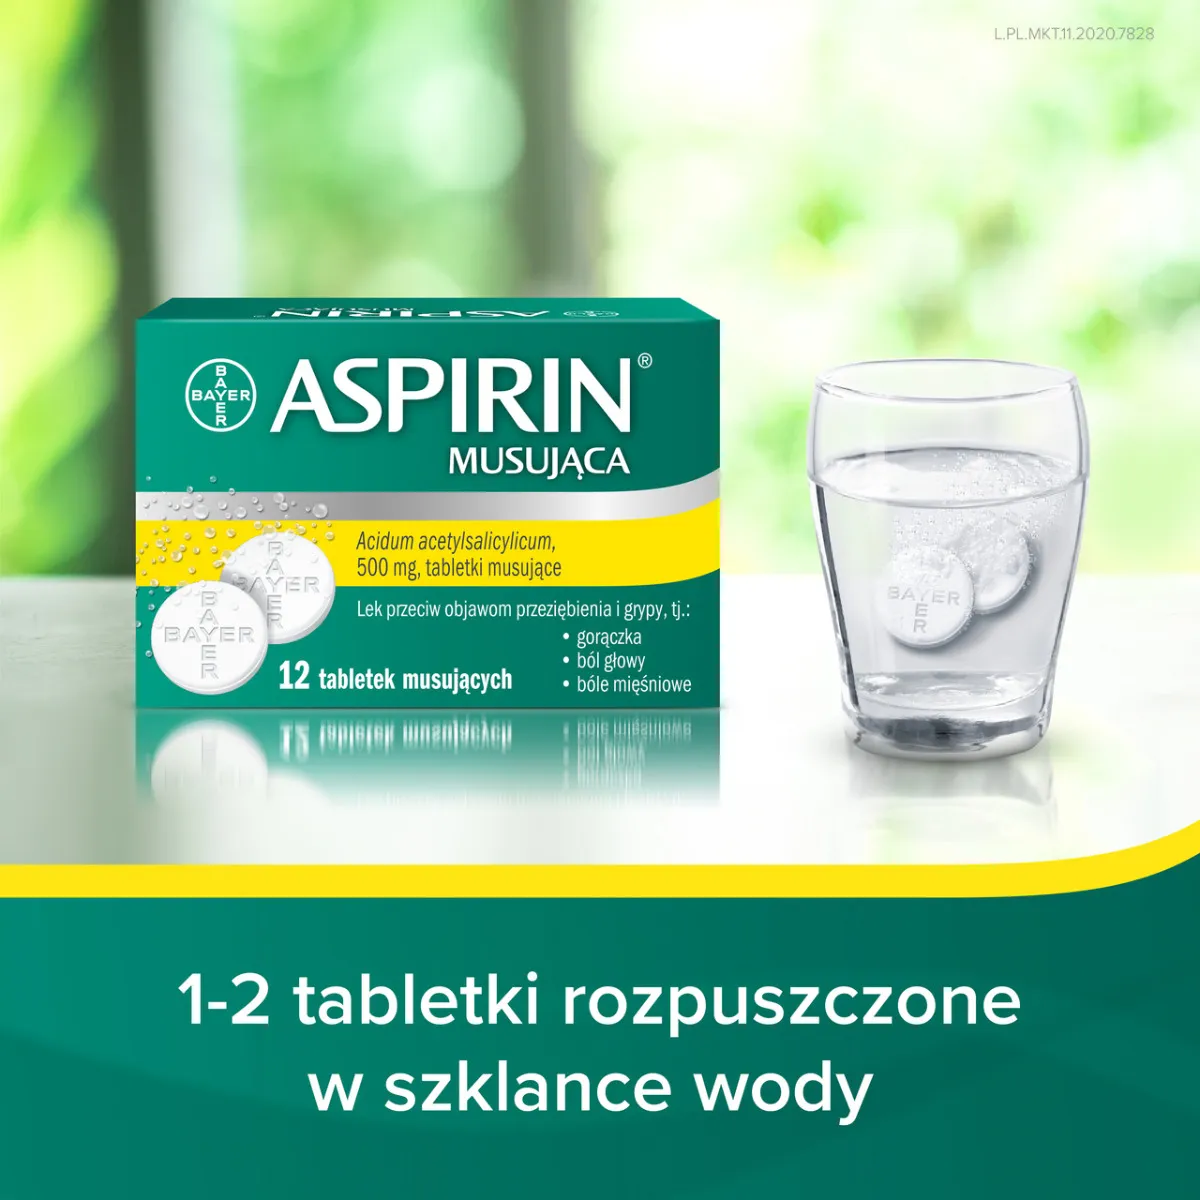 Aspirin Musująca, 500 mg, 12 tabletek musujących 